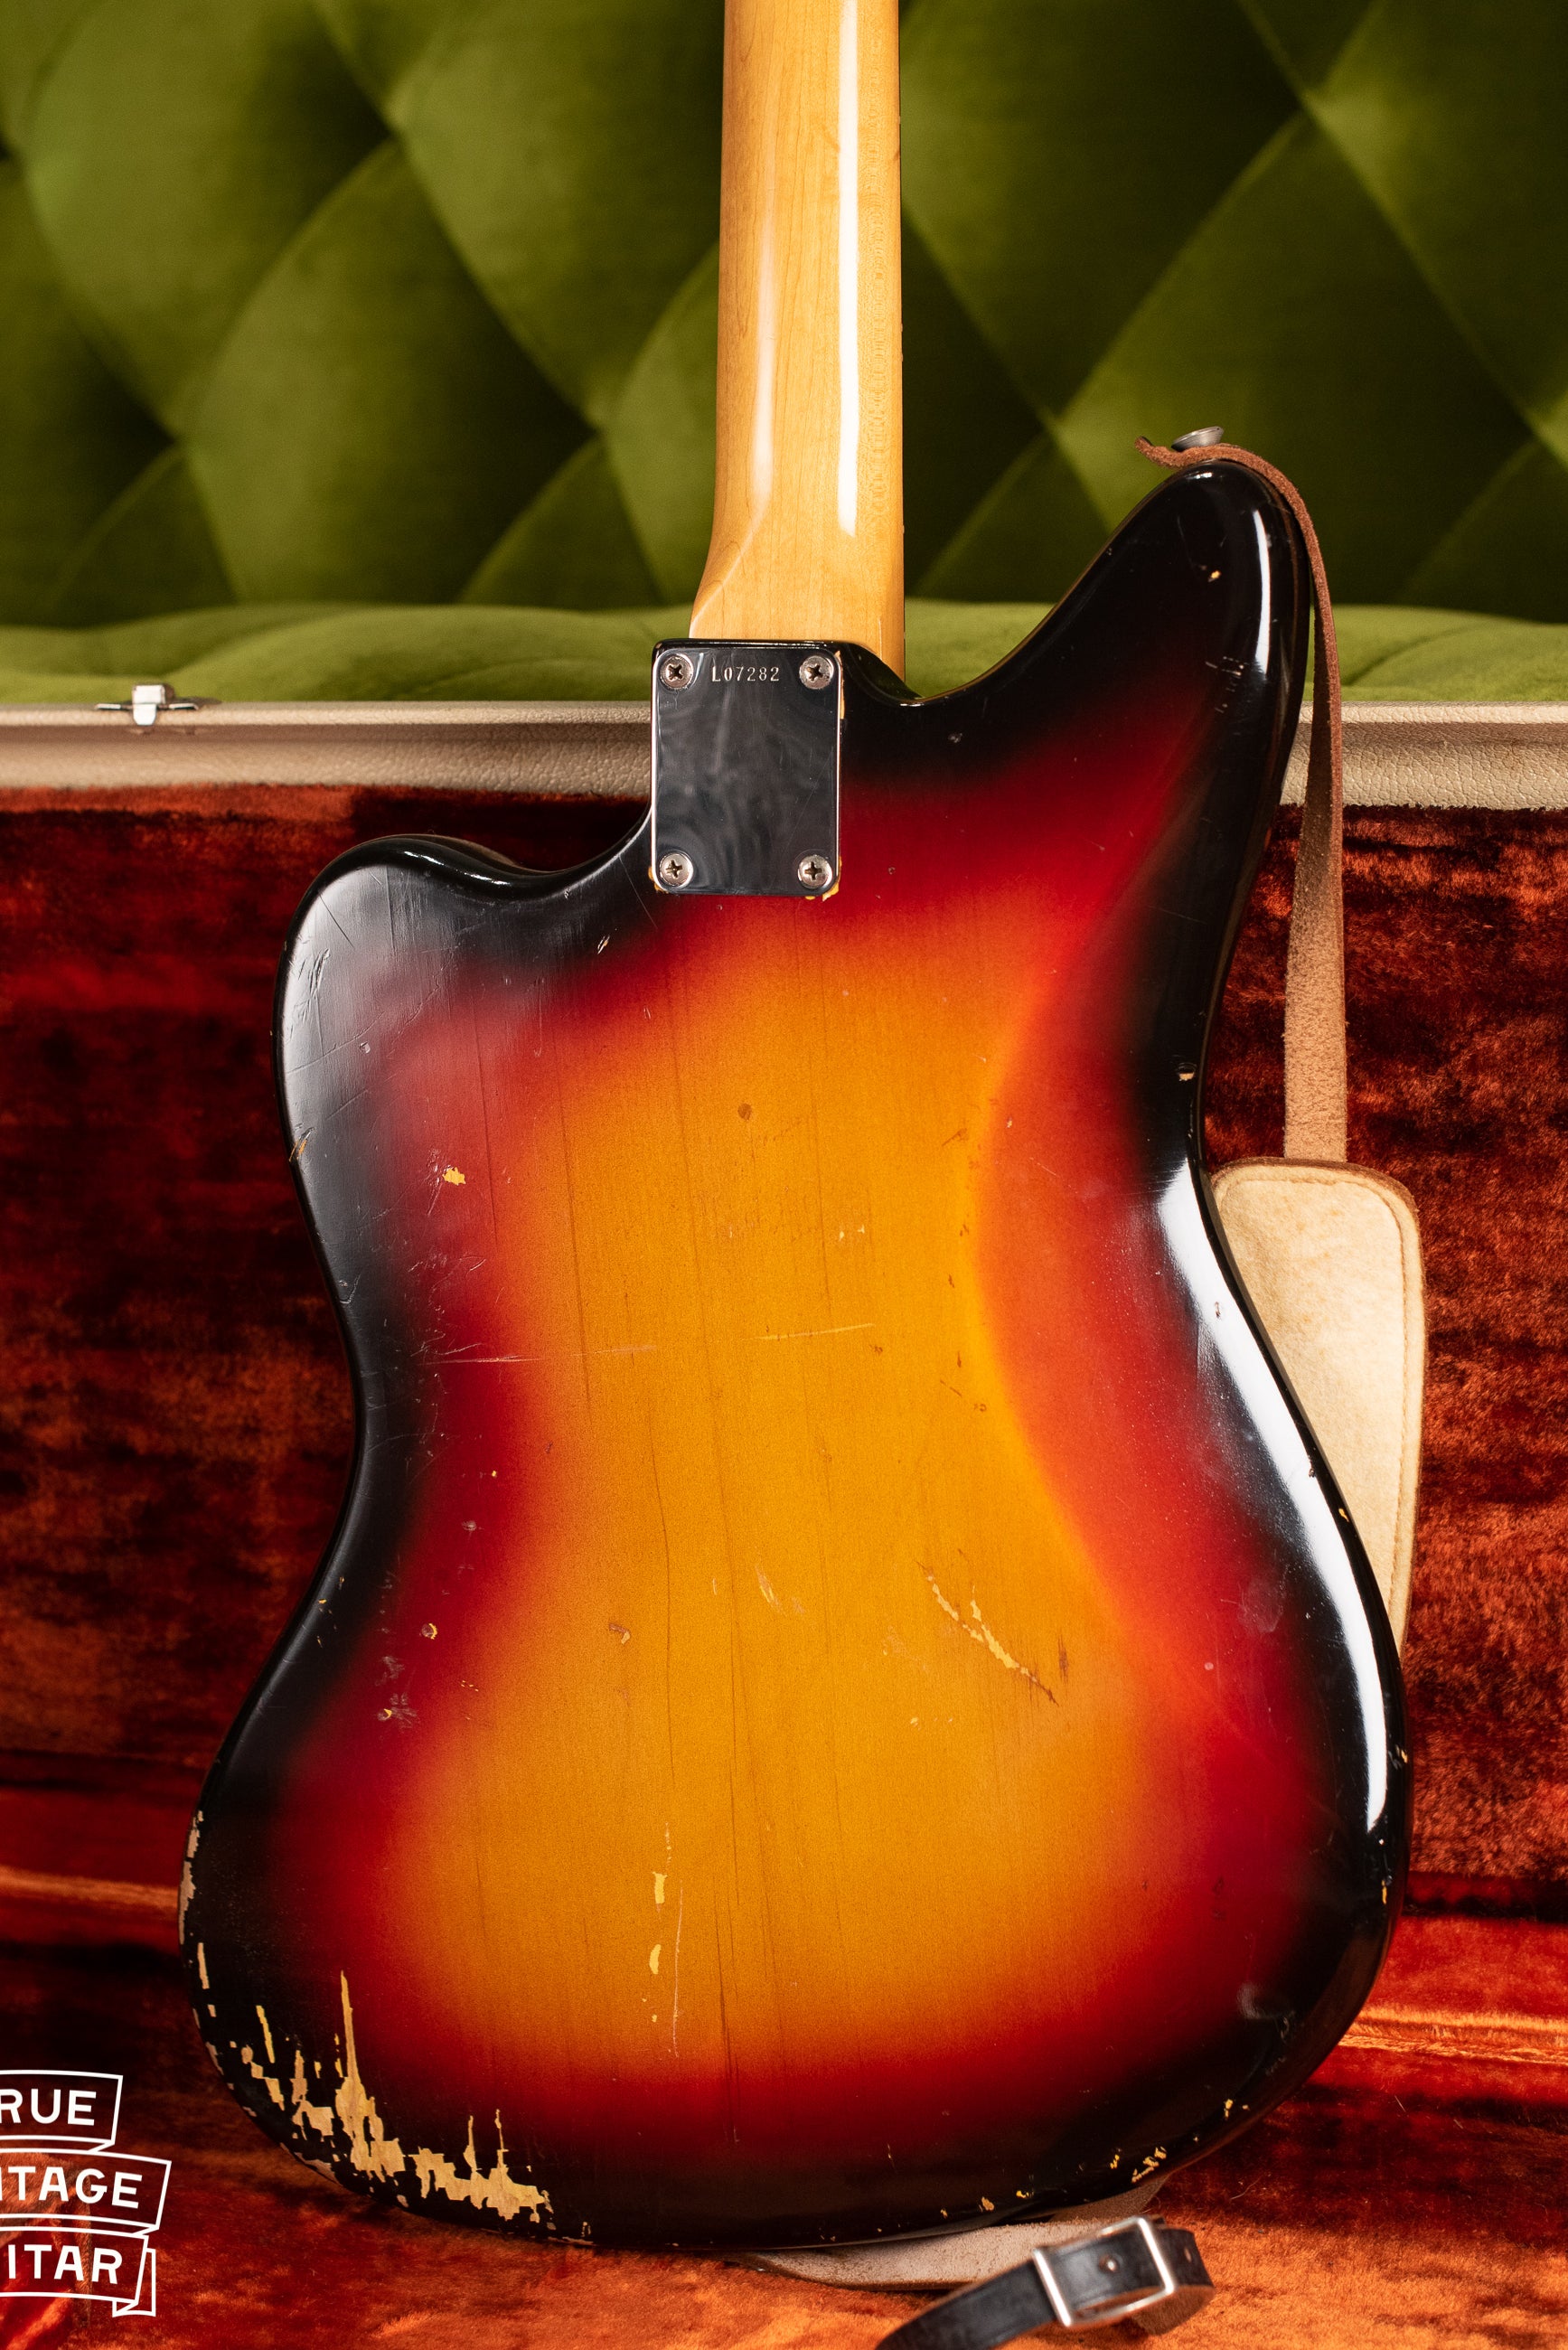 Vintage 1963 Fender Jaguar Sunburst guitar